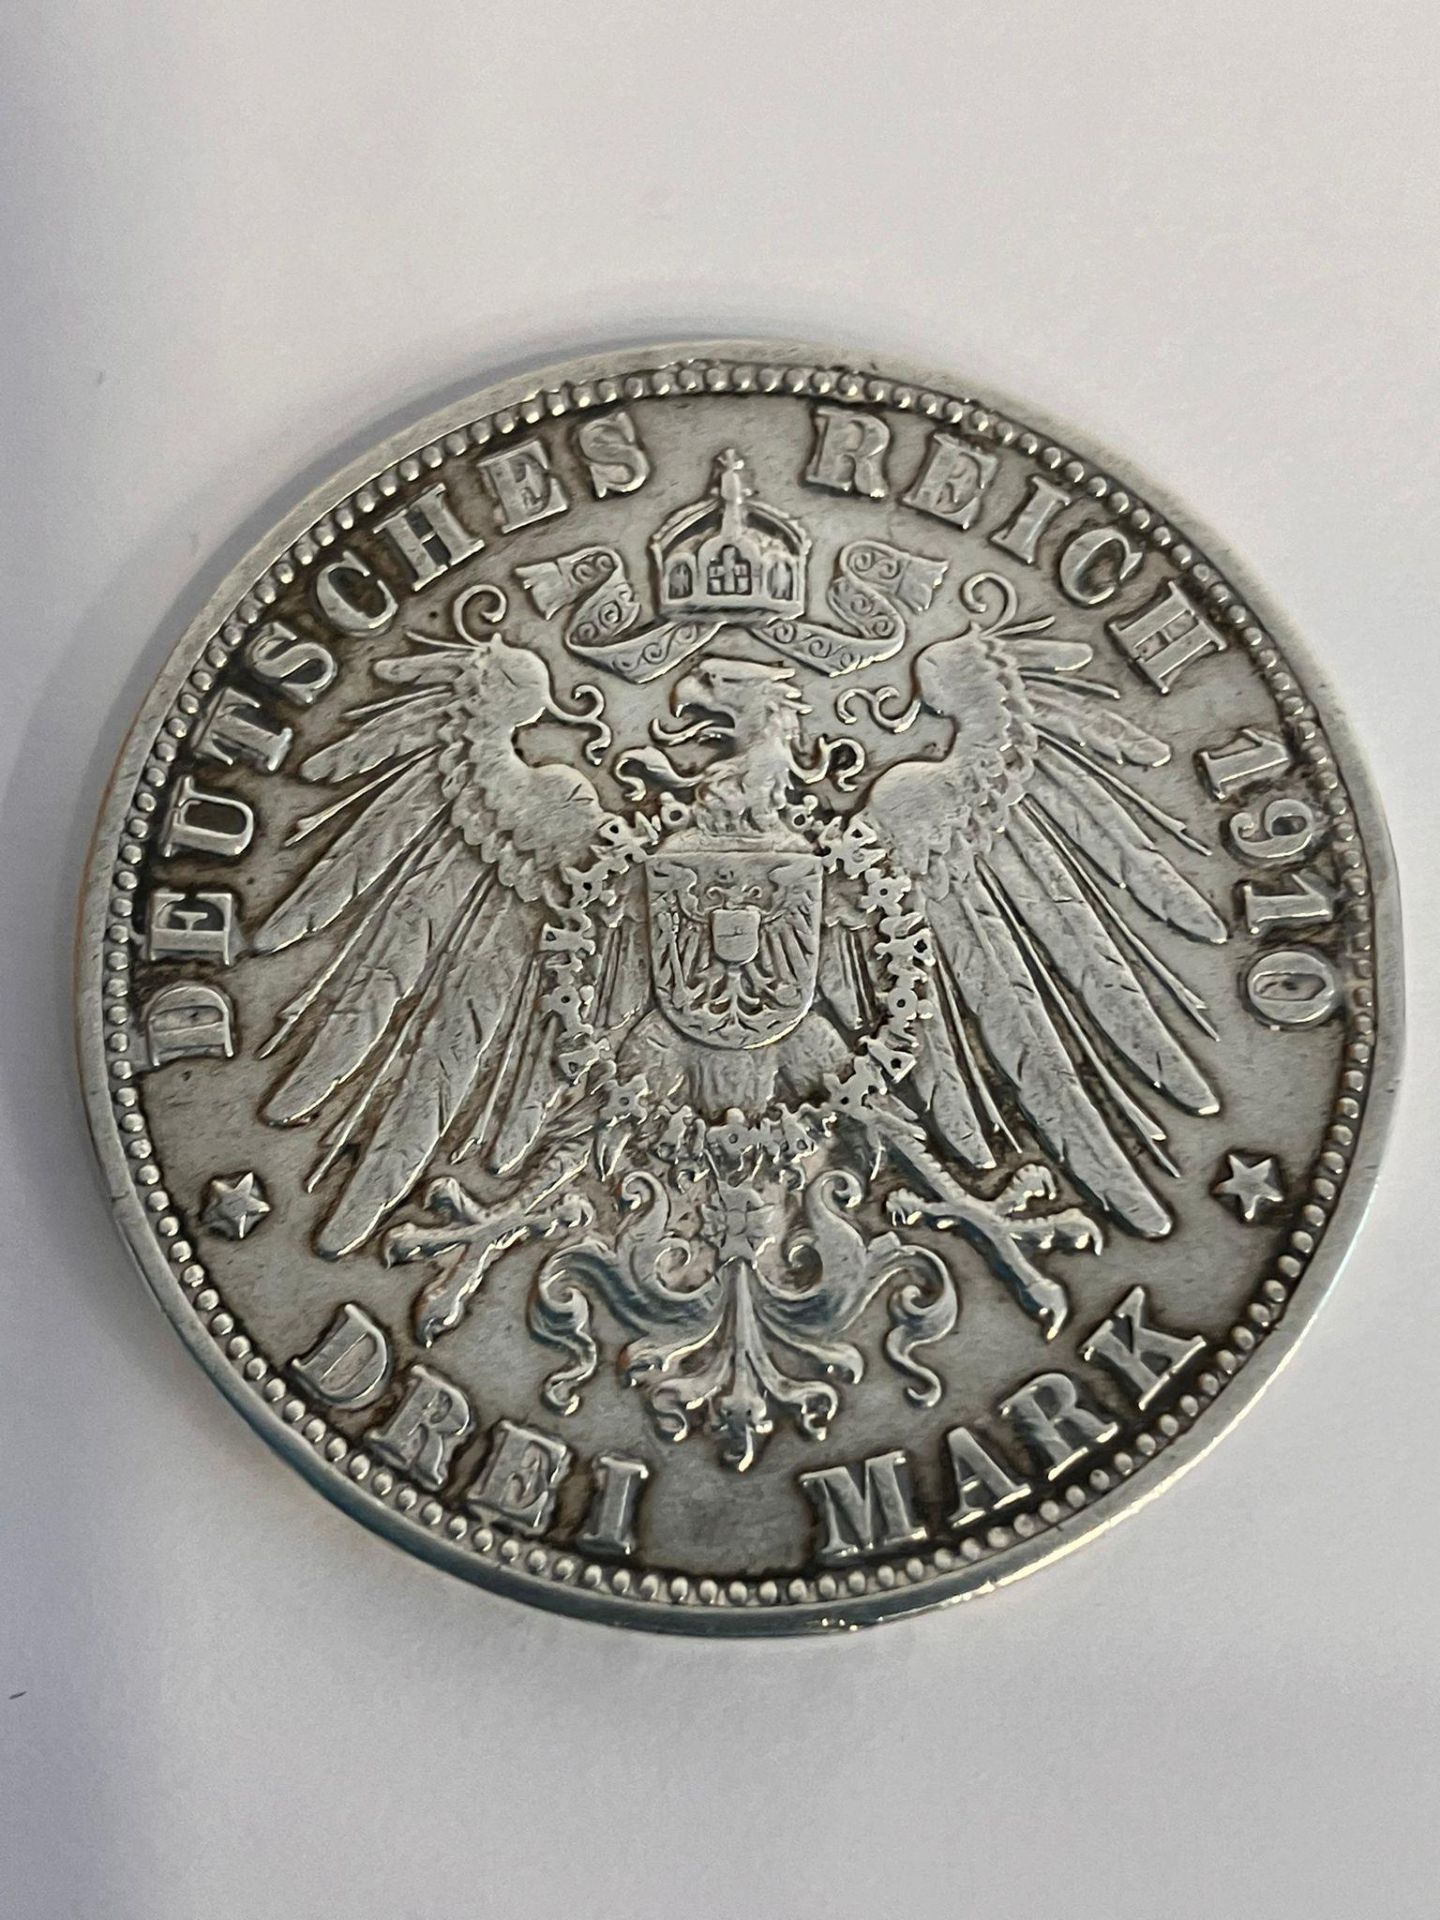 1910 GERMAN SILVER 3 MARK COIN. Rare STUTTGART MINT. WILLHELM II. Very fine/extra fine condition.